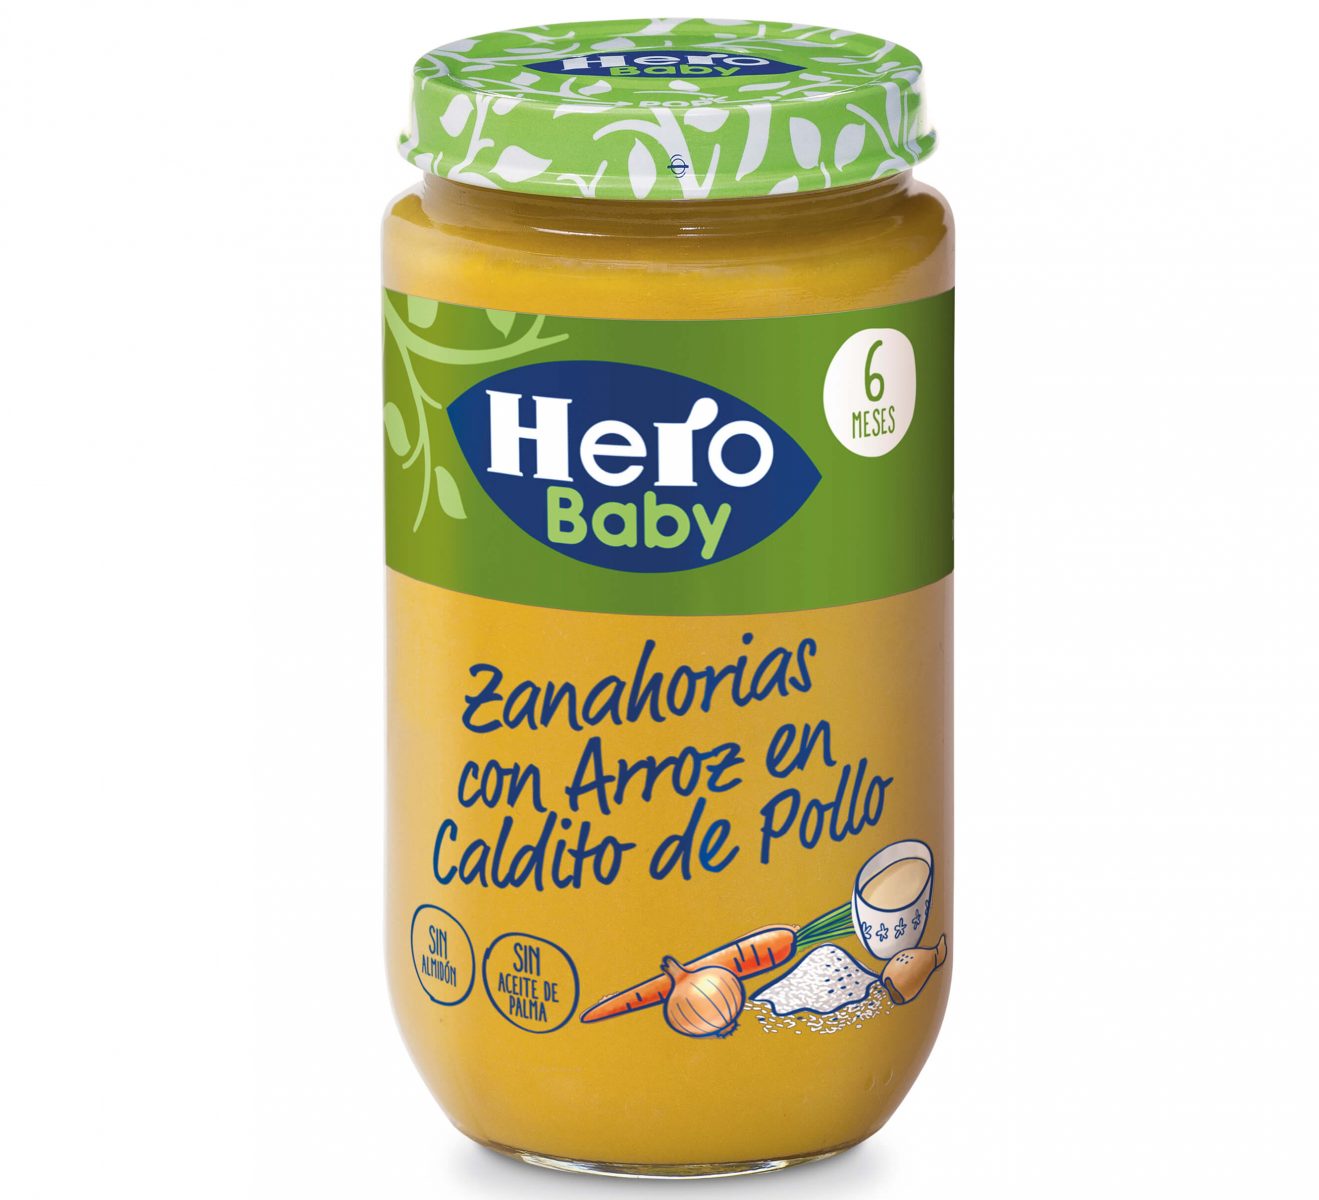 Nuevos tarritos Hero Baby, Campañas